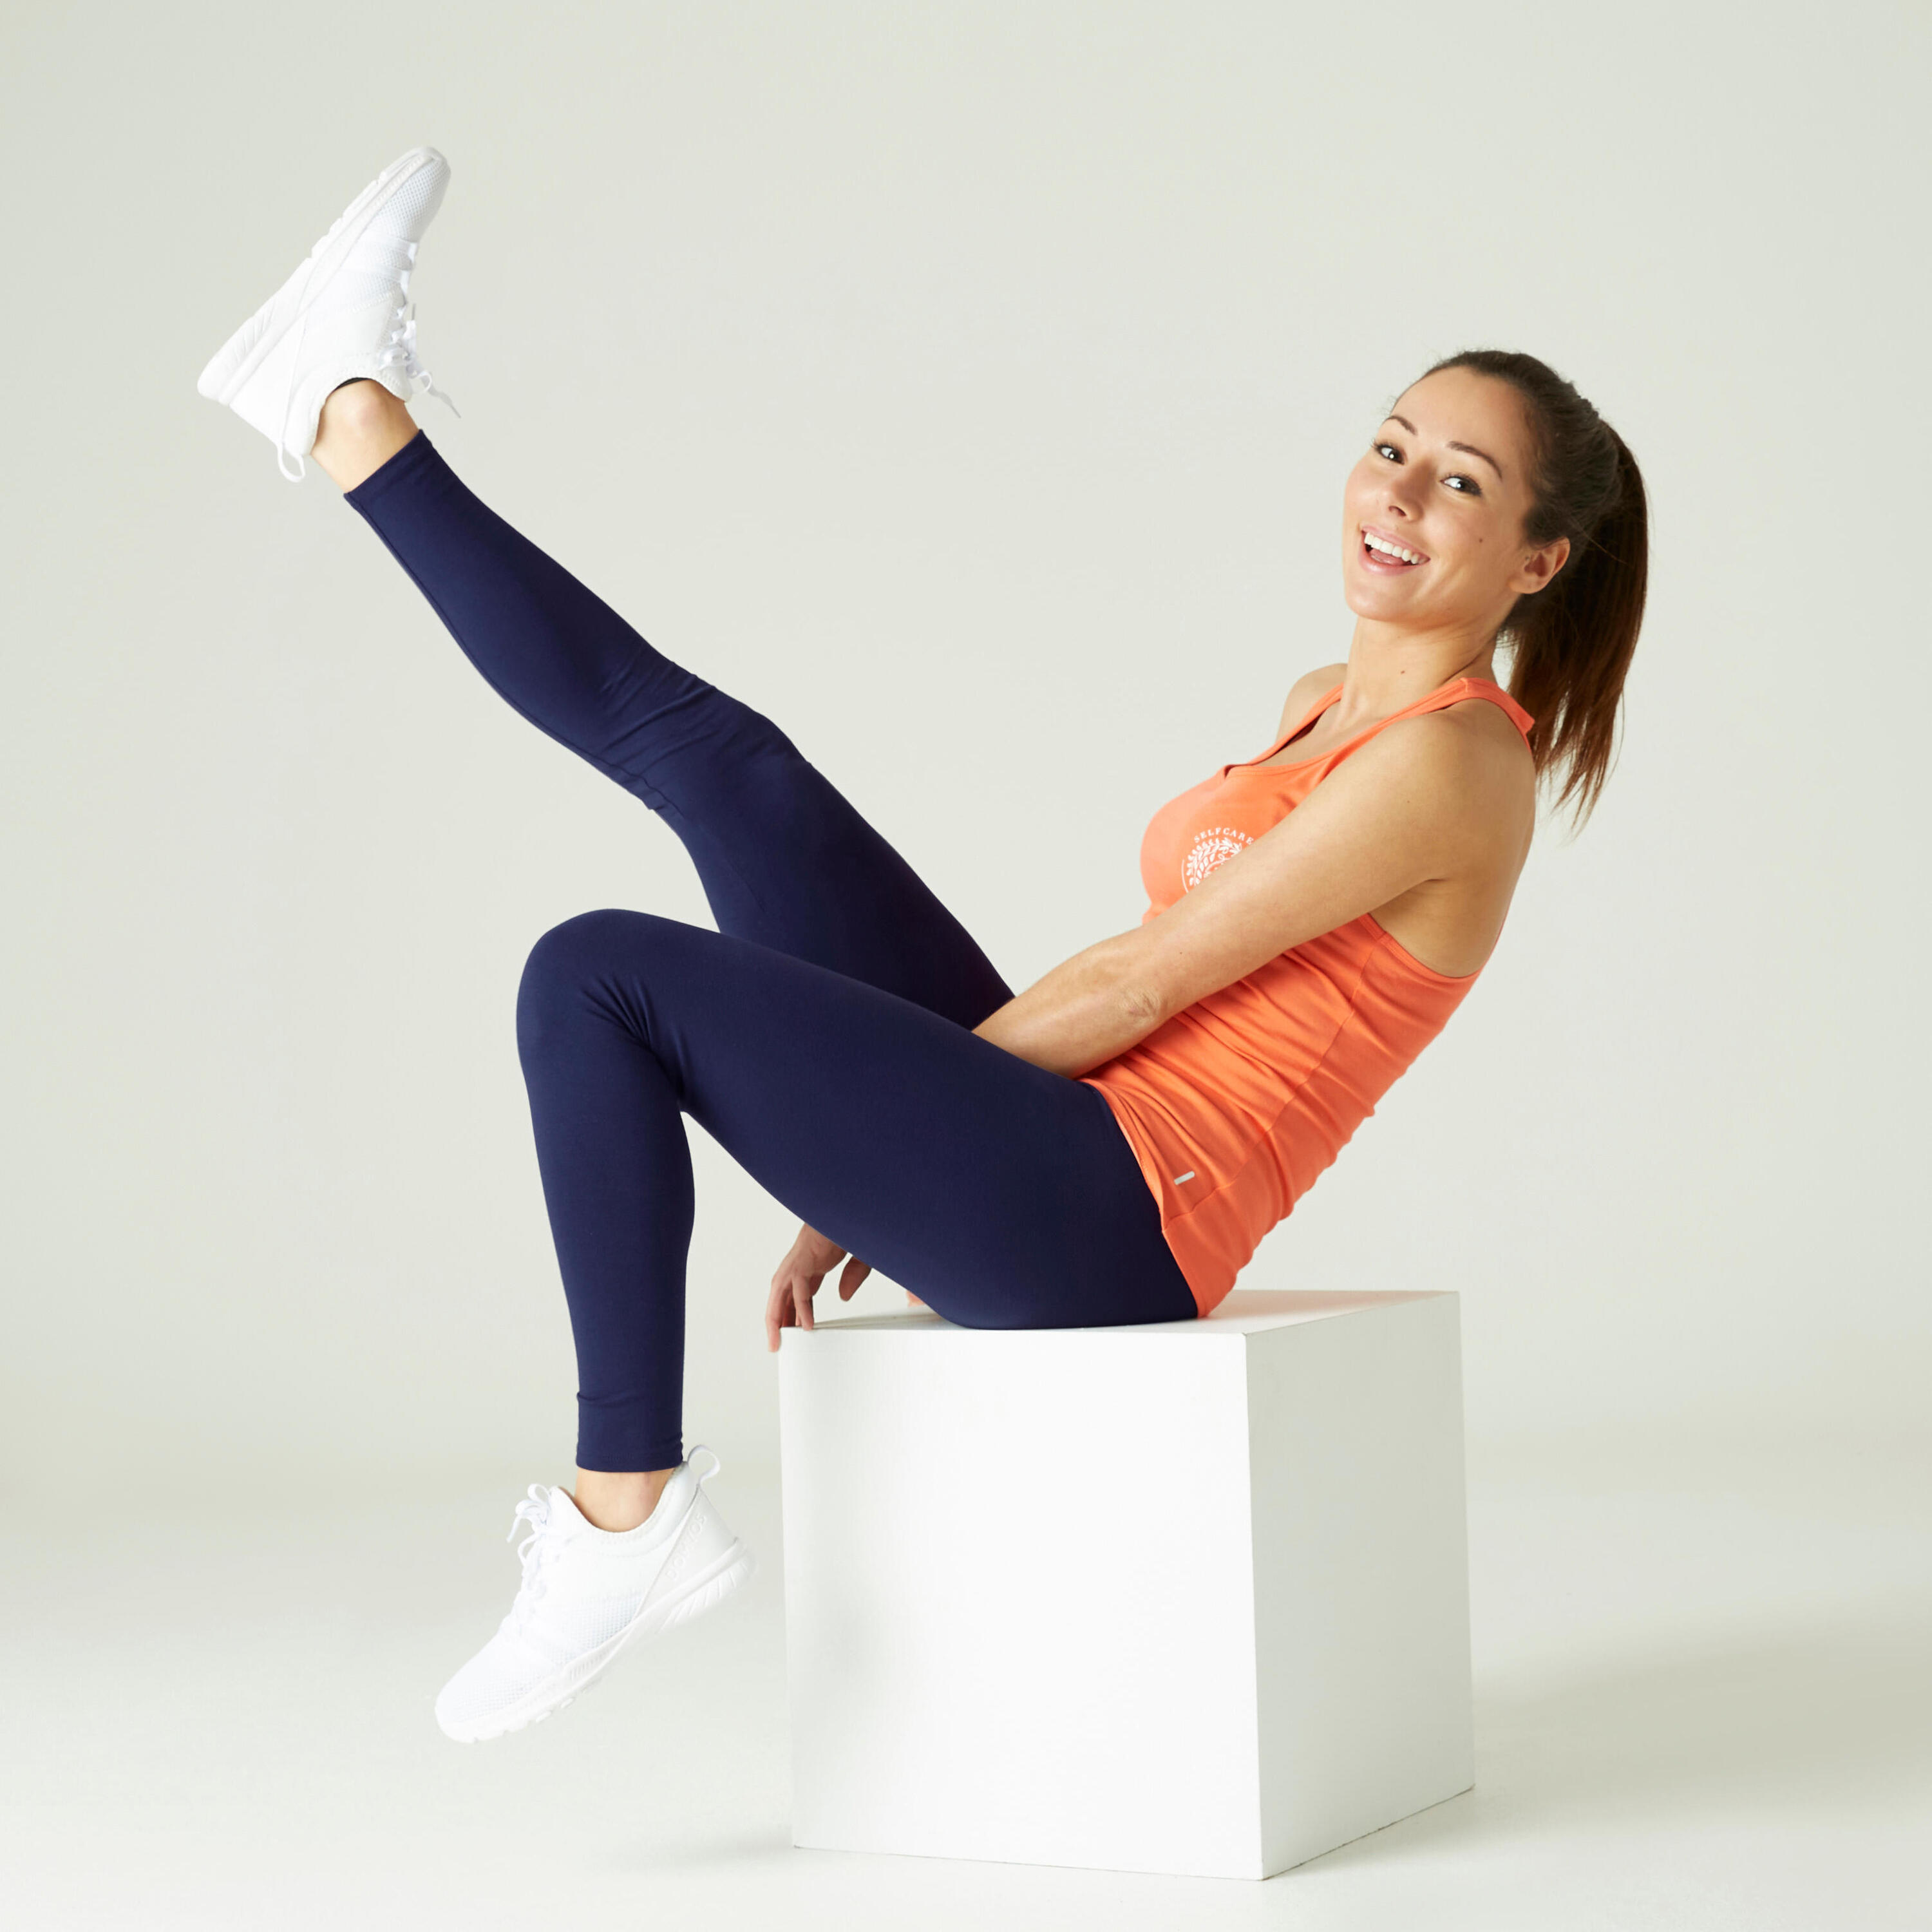 Women's Slim-Fit Fitness Salto Leggings 100 - Navy Blue 4/6